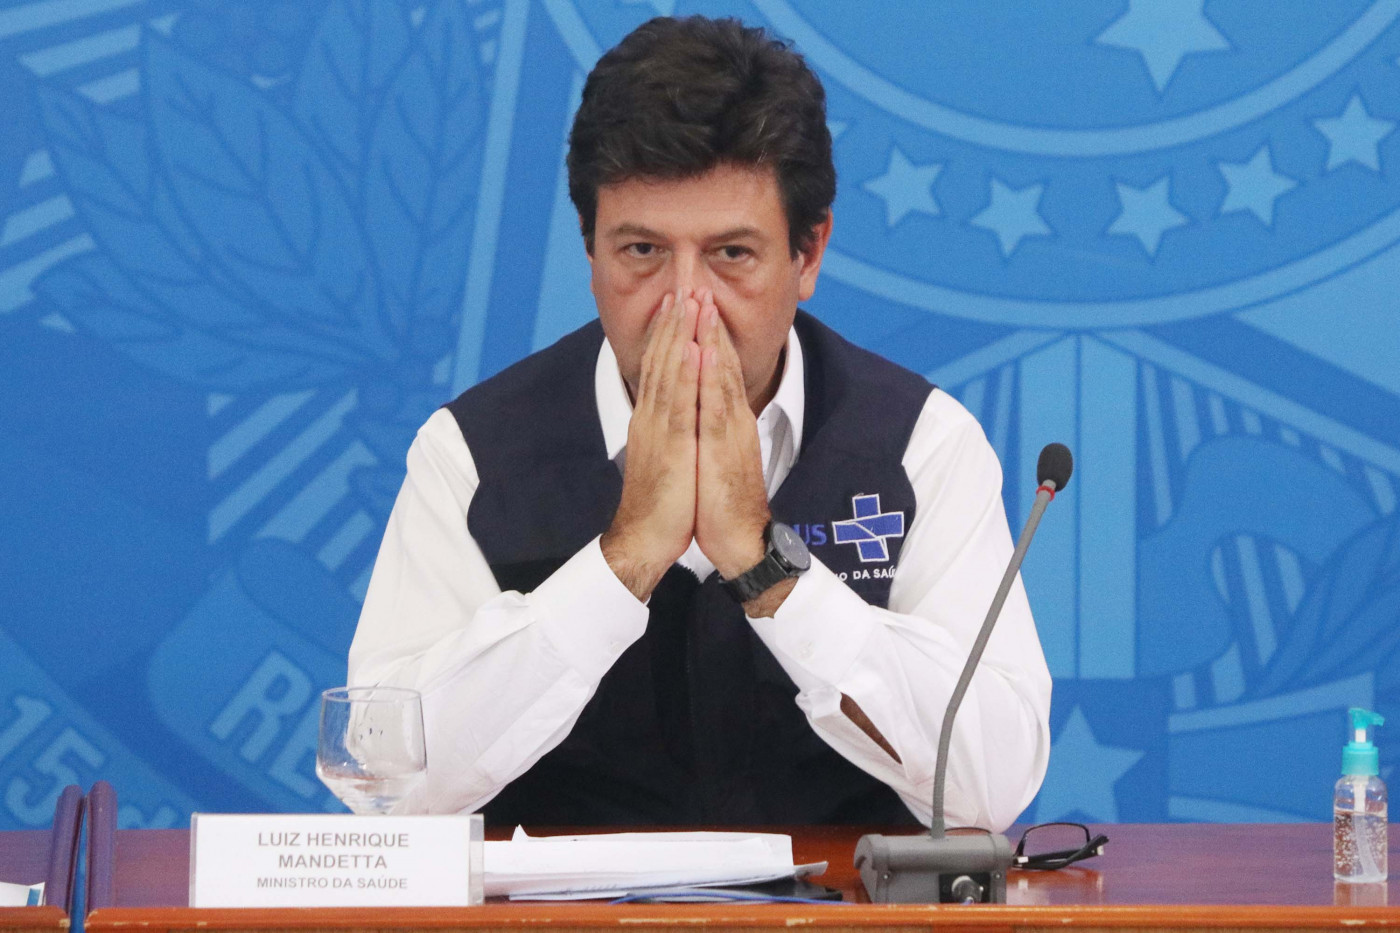 Ministro Luiz Henrique Mandetta com as mãos fechadas como se estivesse rezando. Ele usa camisa branca e um colete azul marinho do SUS. Fala em uma coletiva, está em cima de uma mesa de madeira, com um fundo azul e um microfone.